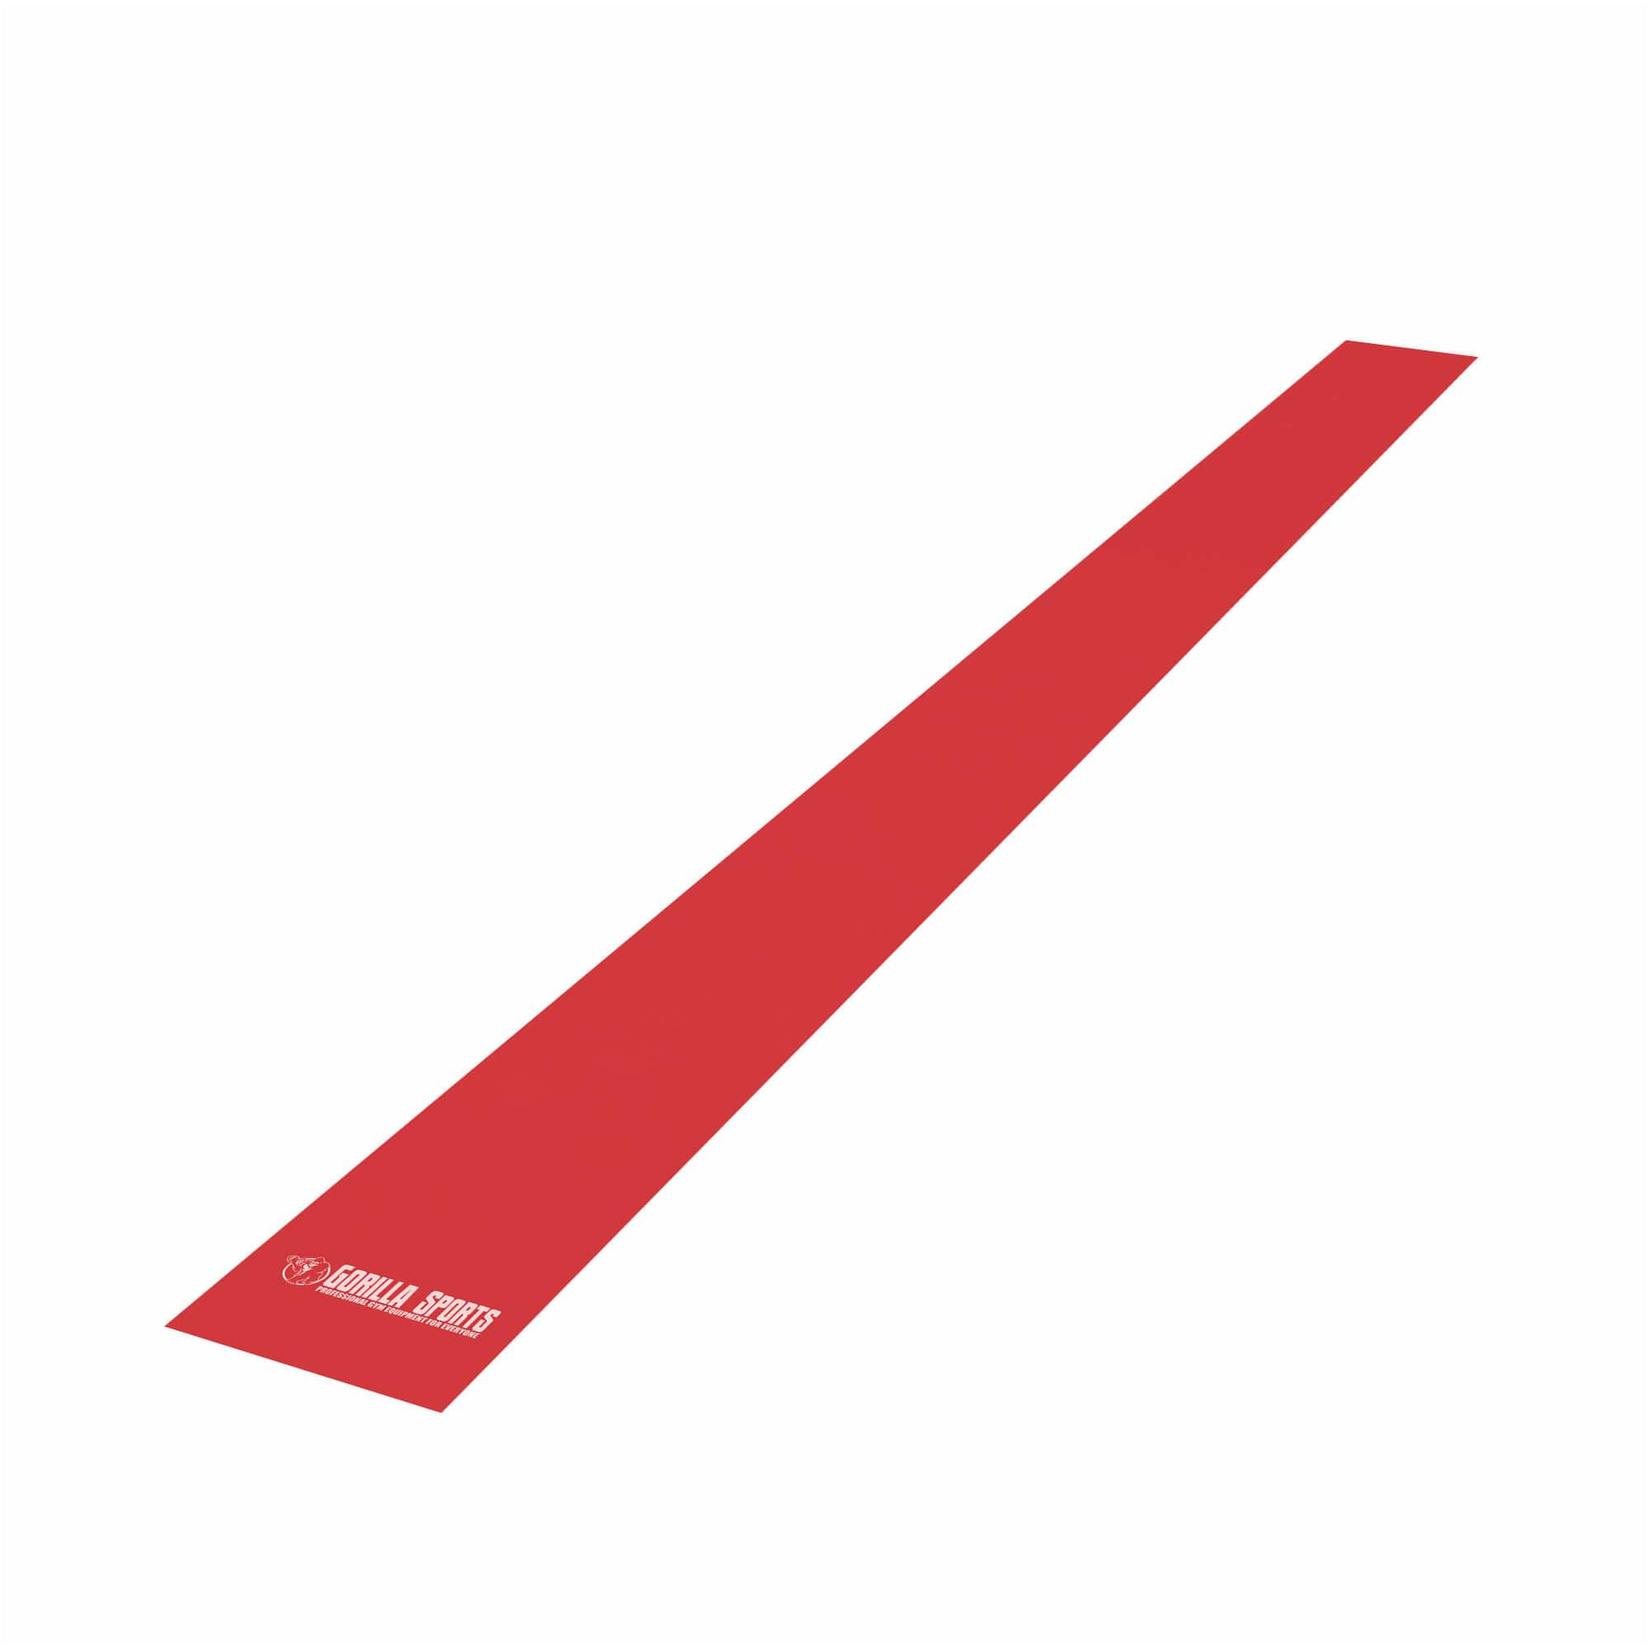 GORILLA SPORTS Elastična traka za vežbanje 200 cm u crvenoj boji